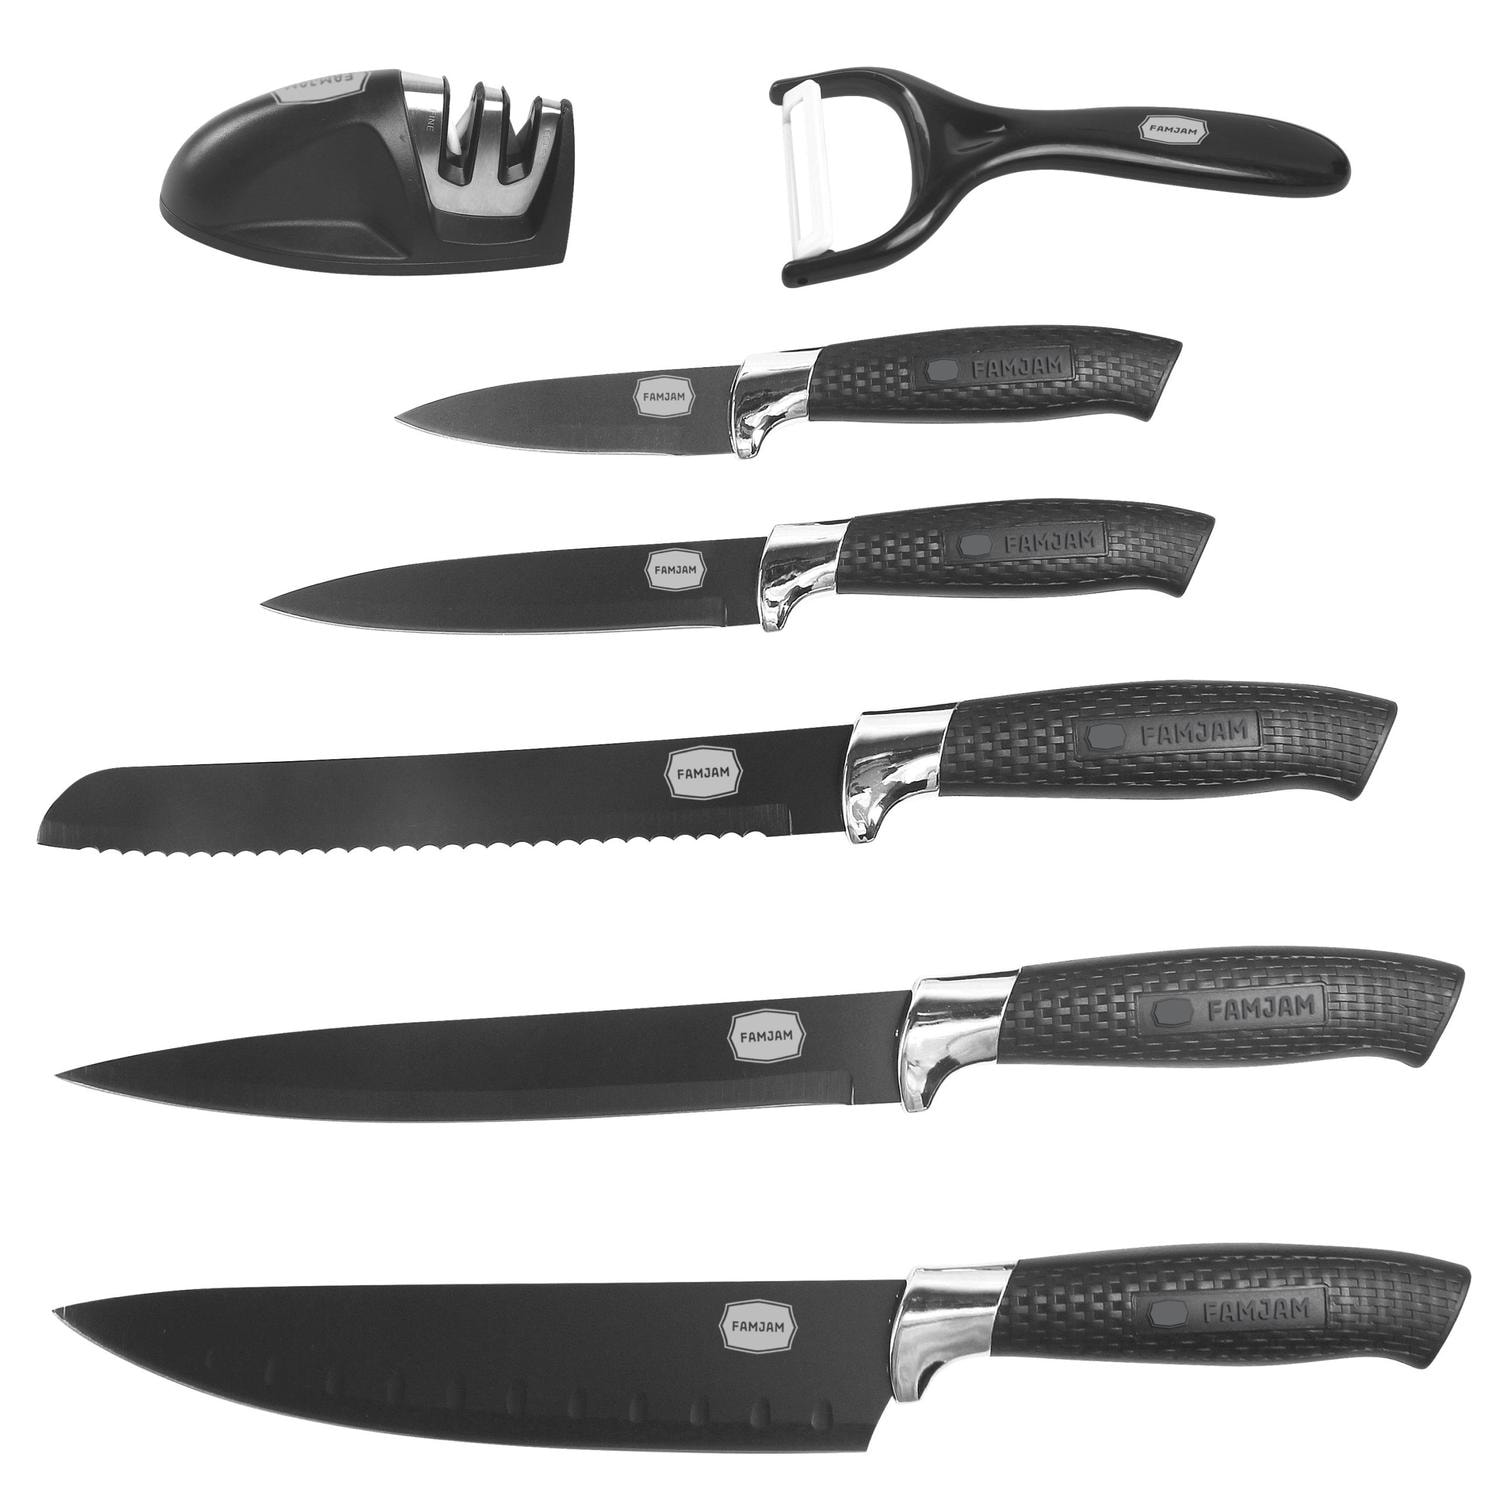 8 Delar Knivset med Ställ för Köket - Köksknivar Skalare och Knivslip Set (25 av 43)